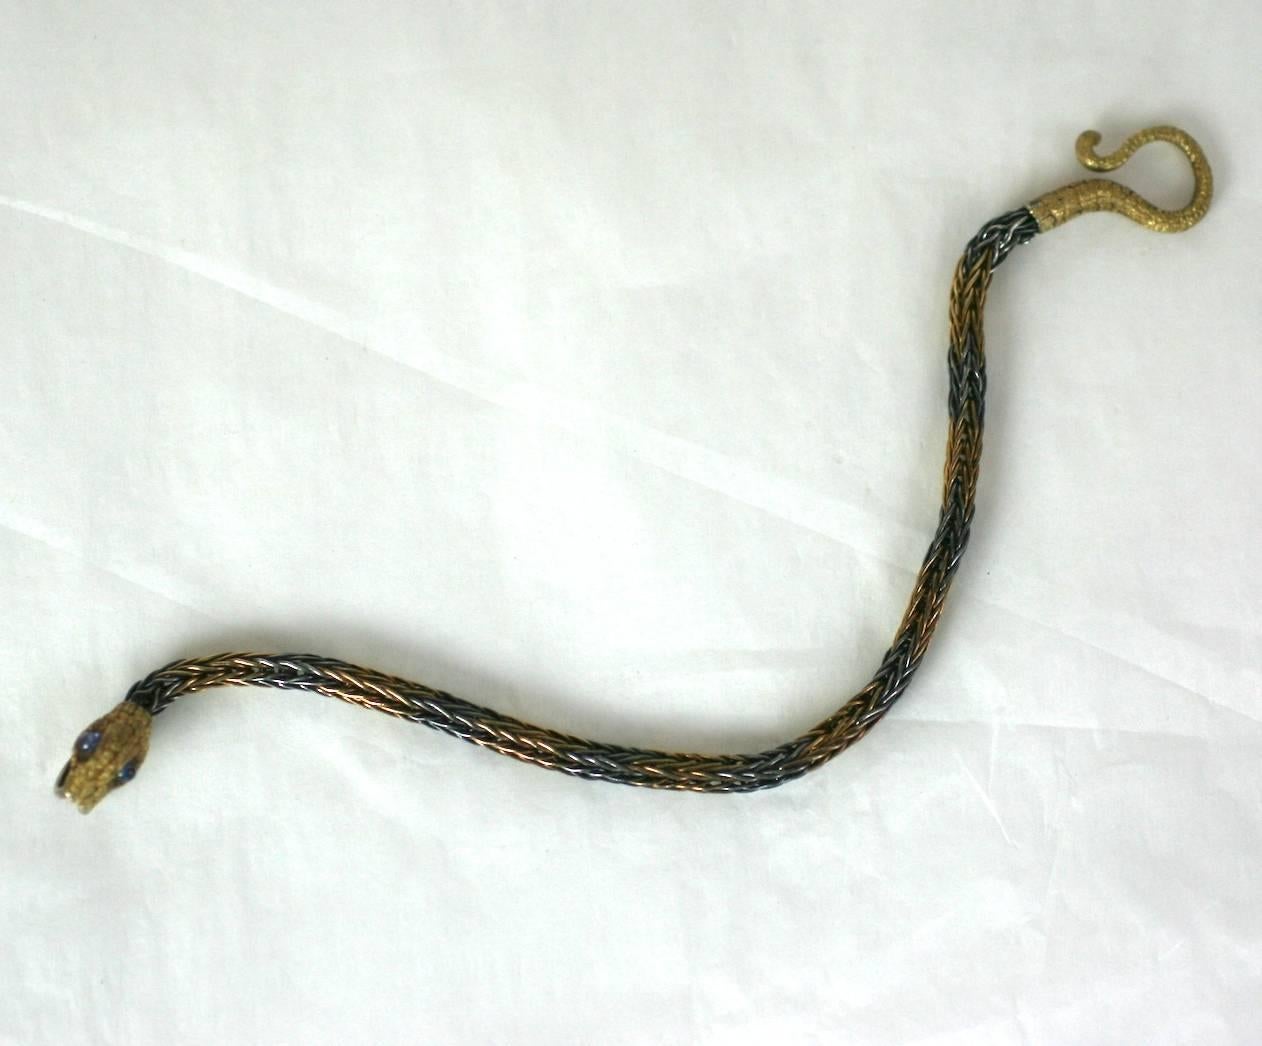 Amazing Antique Bracelet serpent du milieu à la fin du XIXe siècle. La tête et la queue du serpent sont composées d'or 18 carats ciselé et magnifiquement détaillé, avec de grands saphirs cabochons en guise d'yeux. Le travail de l'or est si minutieux